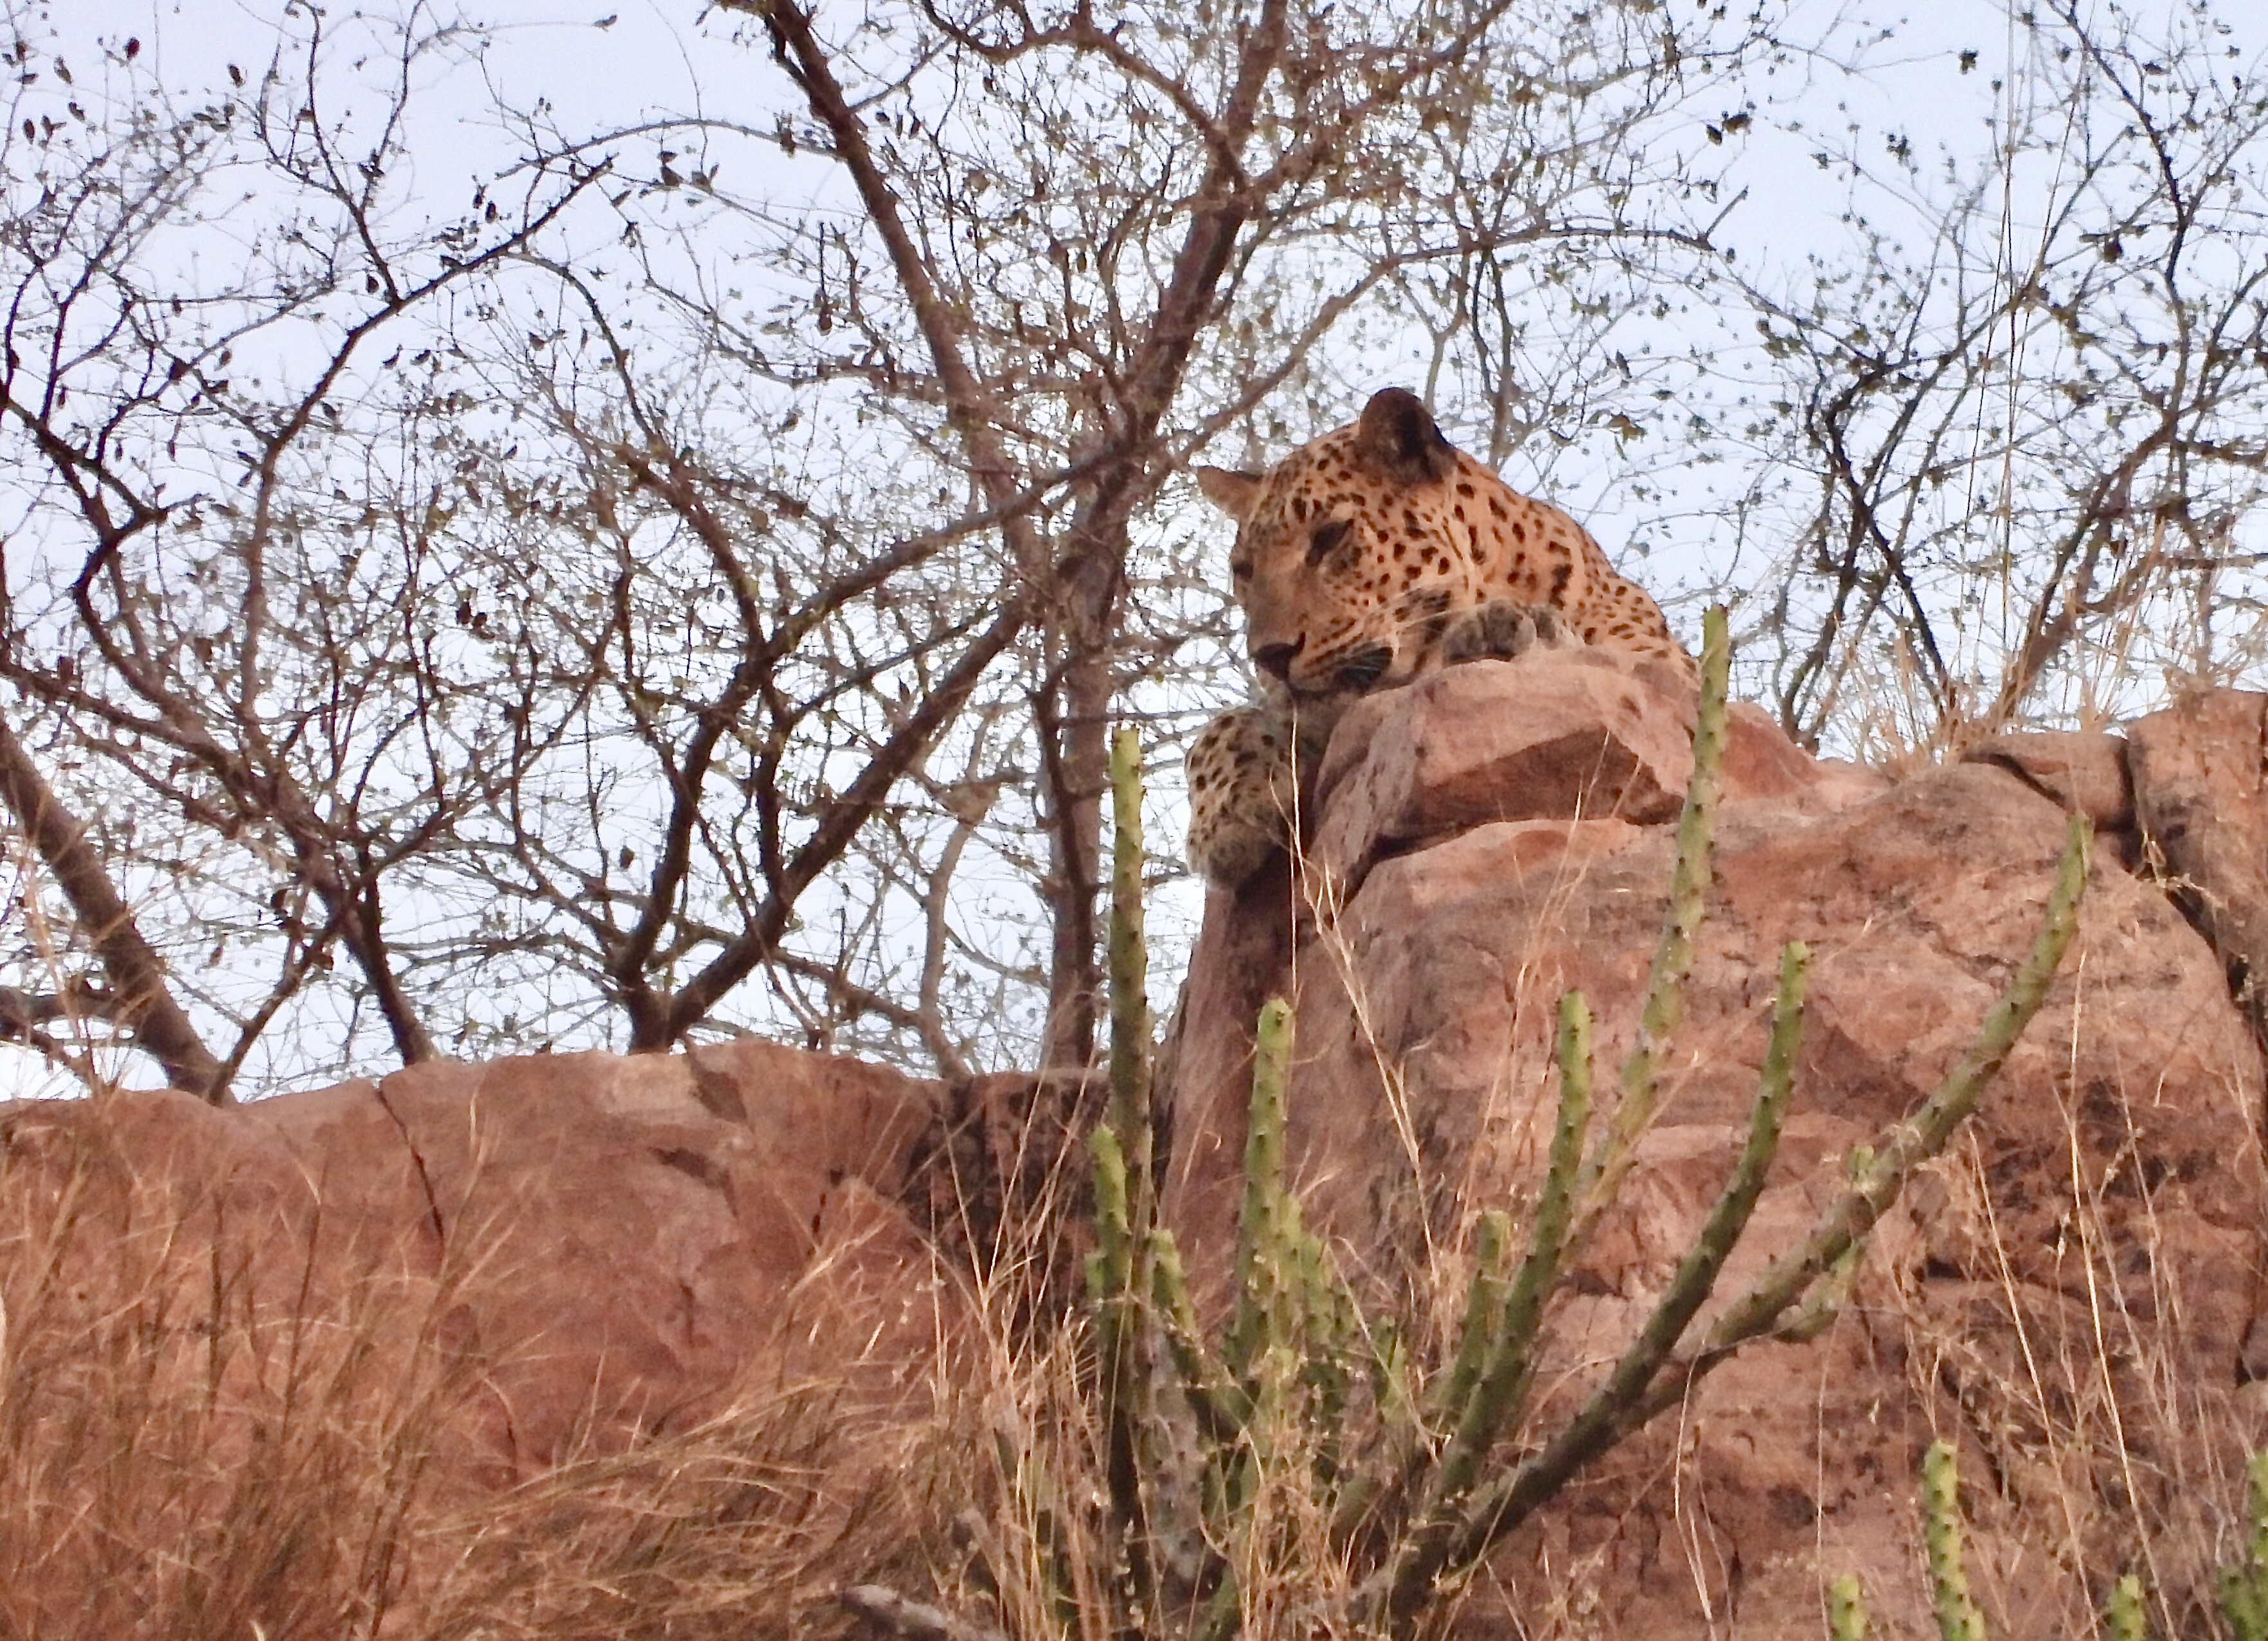 Leopard at Rocks - Salim Ali